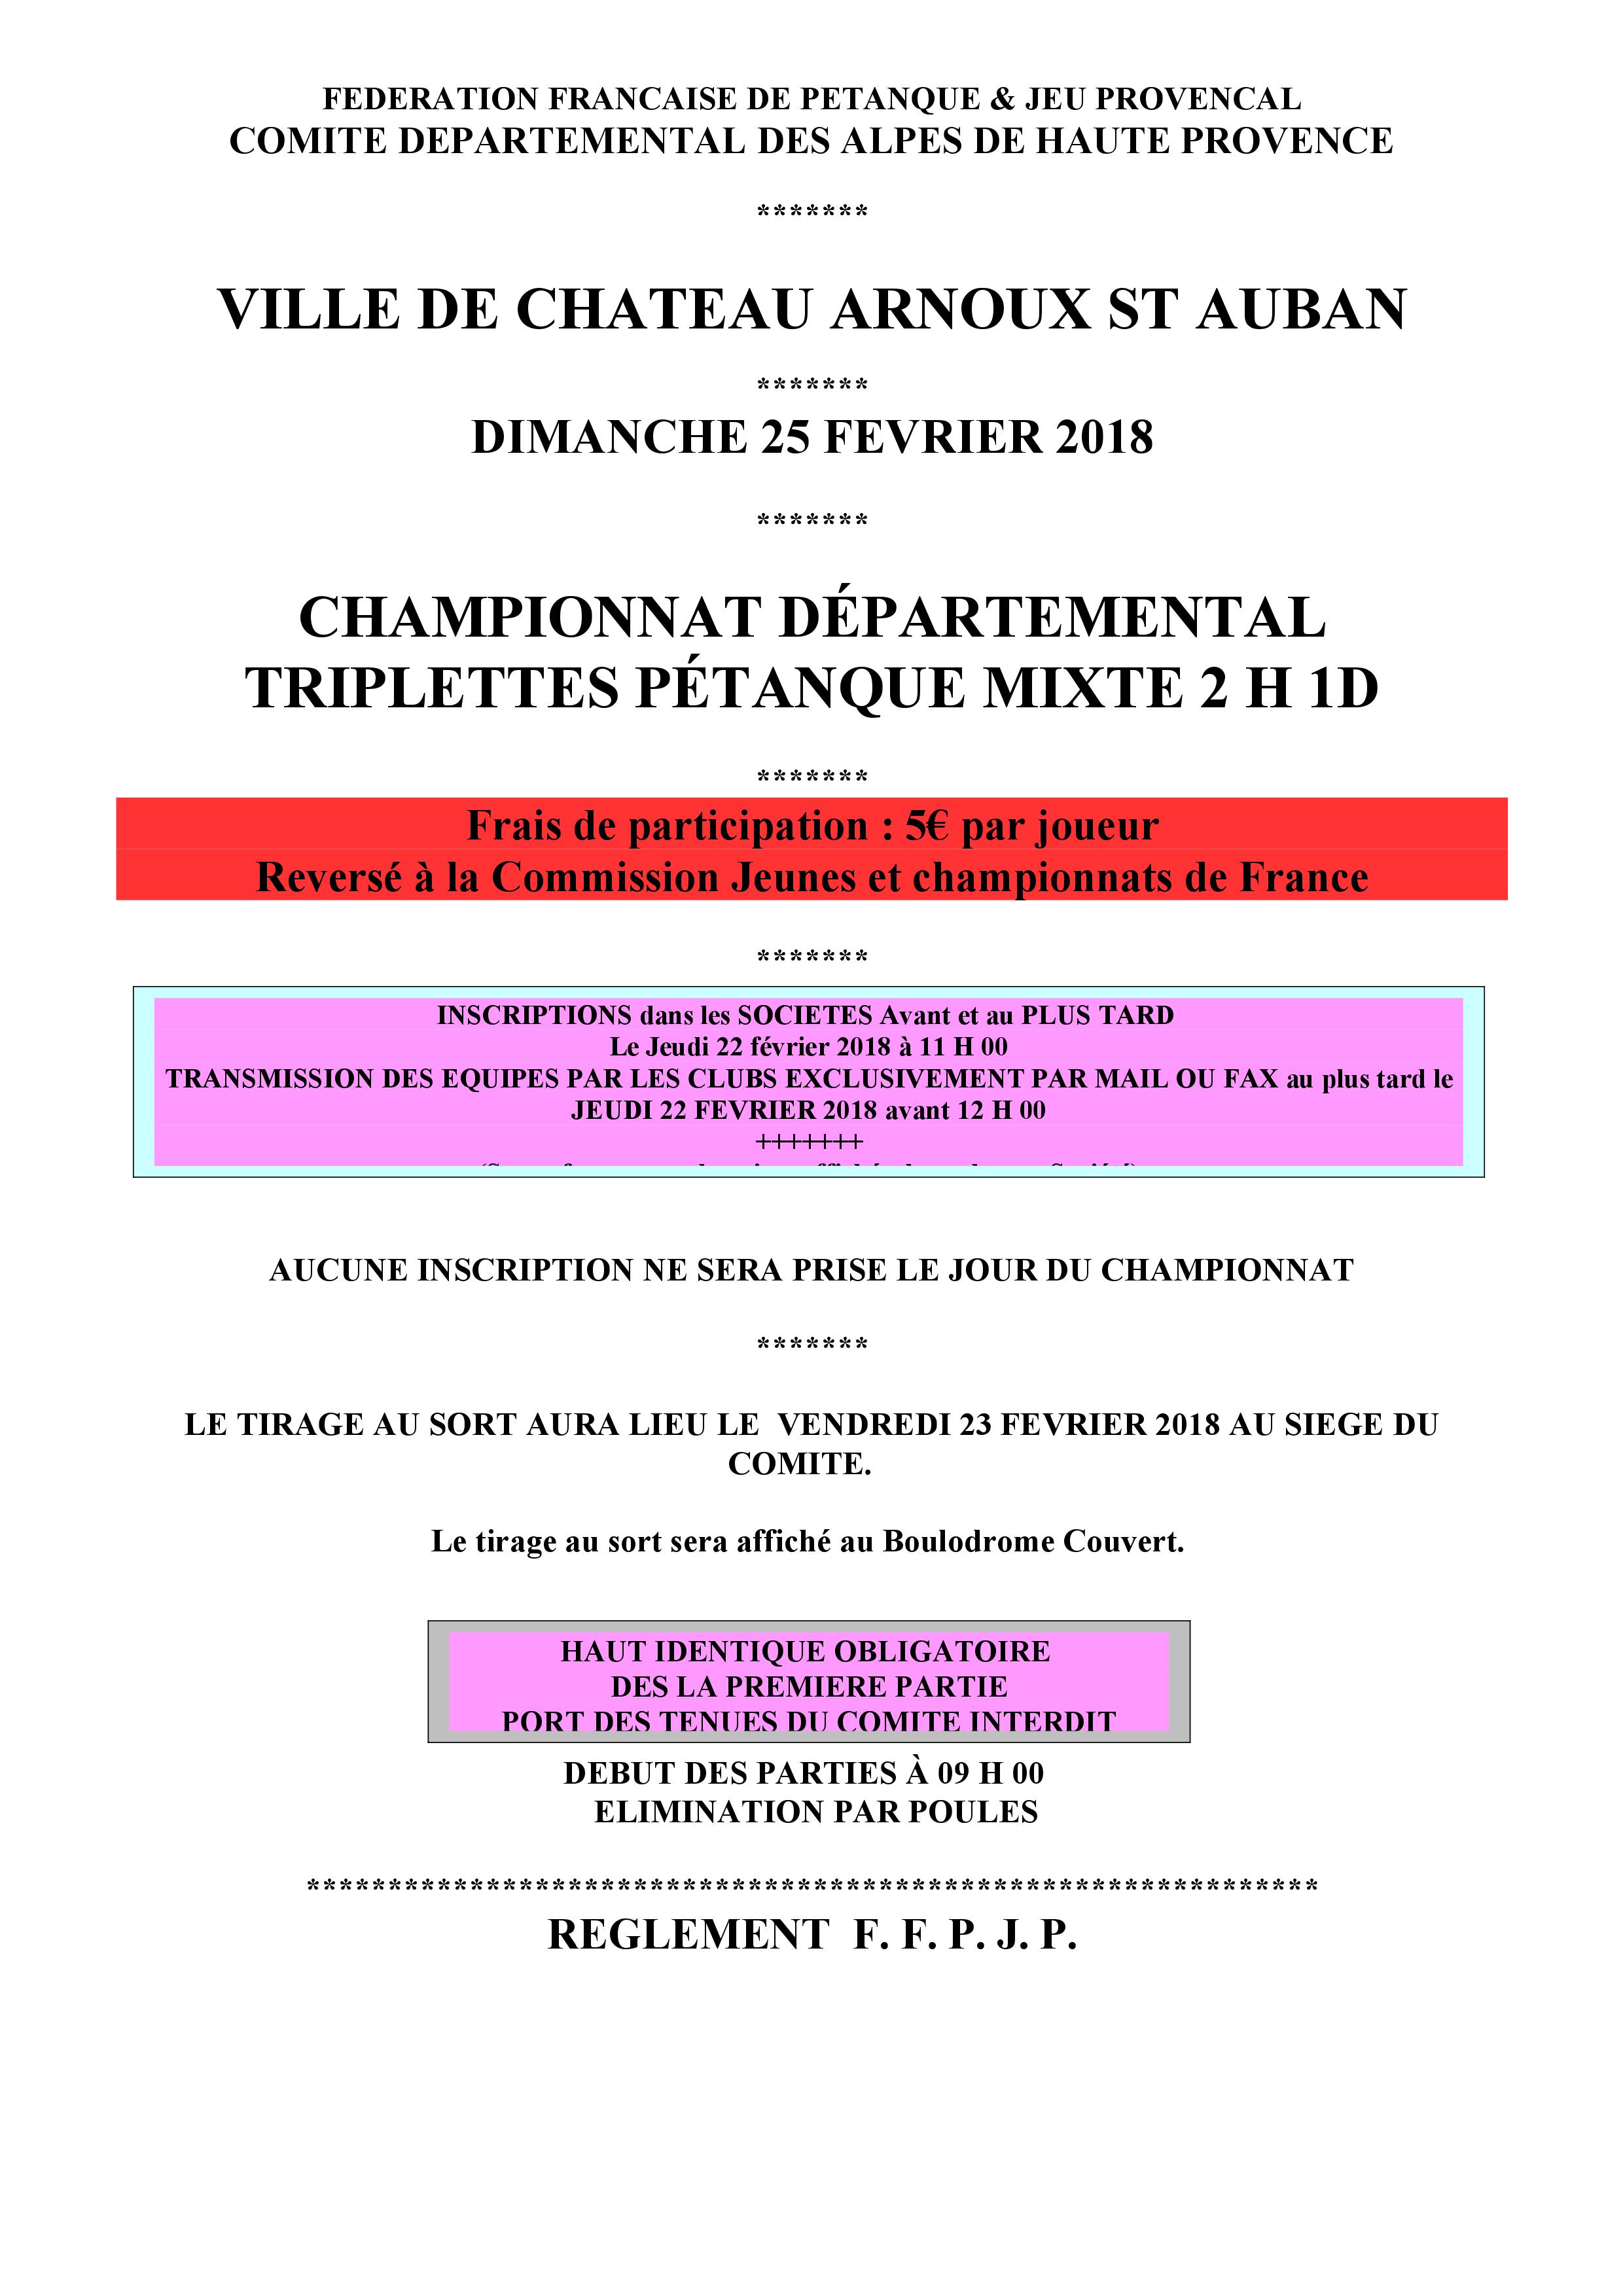 Championnat départemental triplette mixte - Actualité du club de pétanque LA BOULE SISTERONAISE